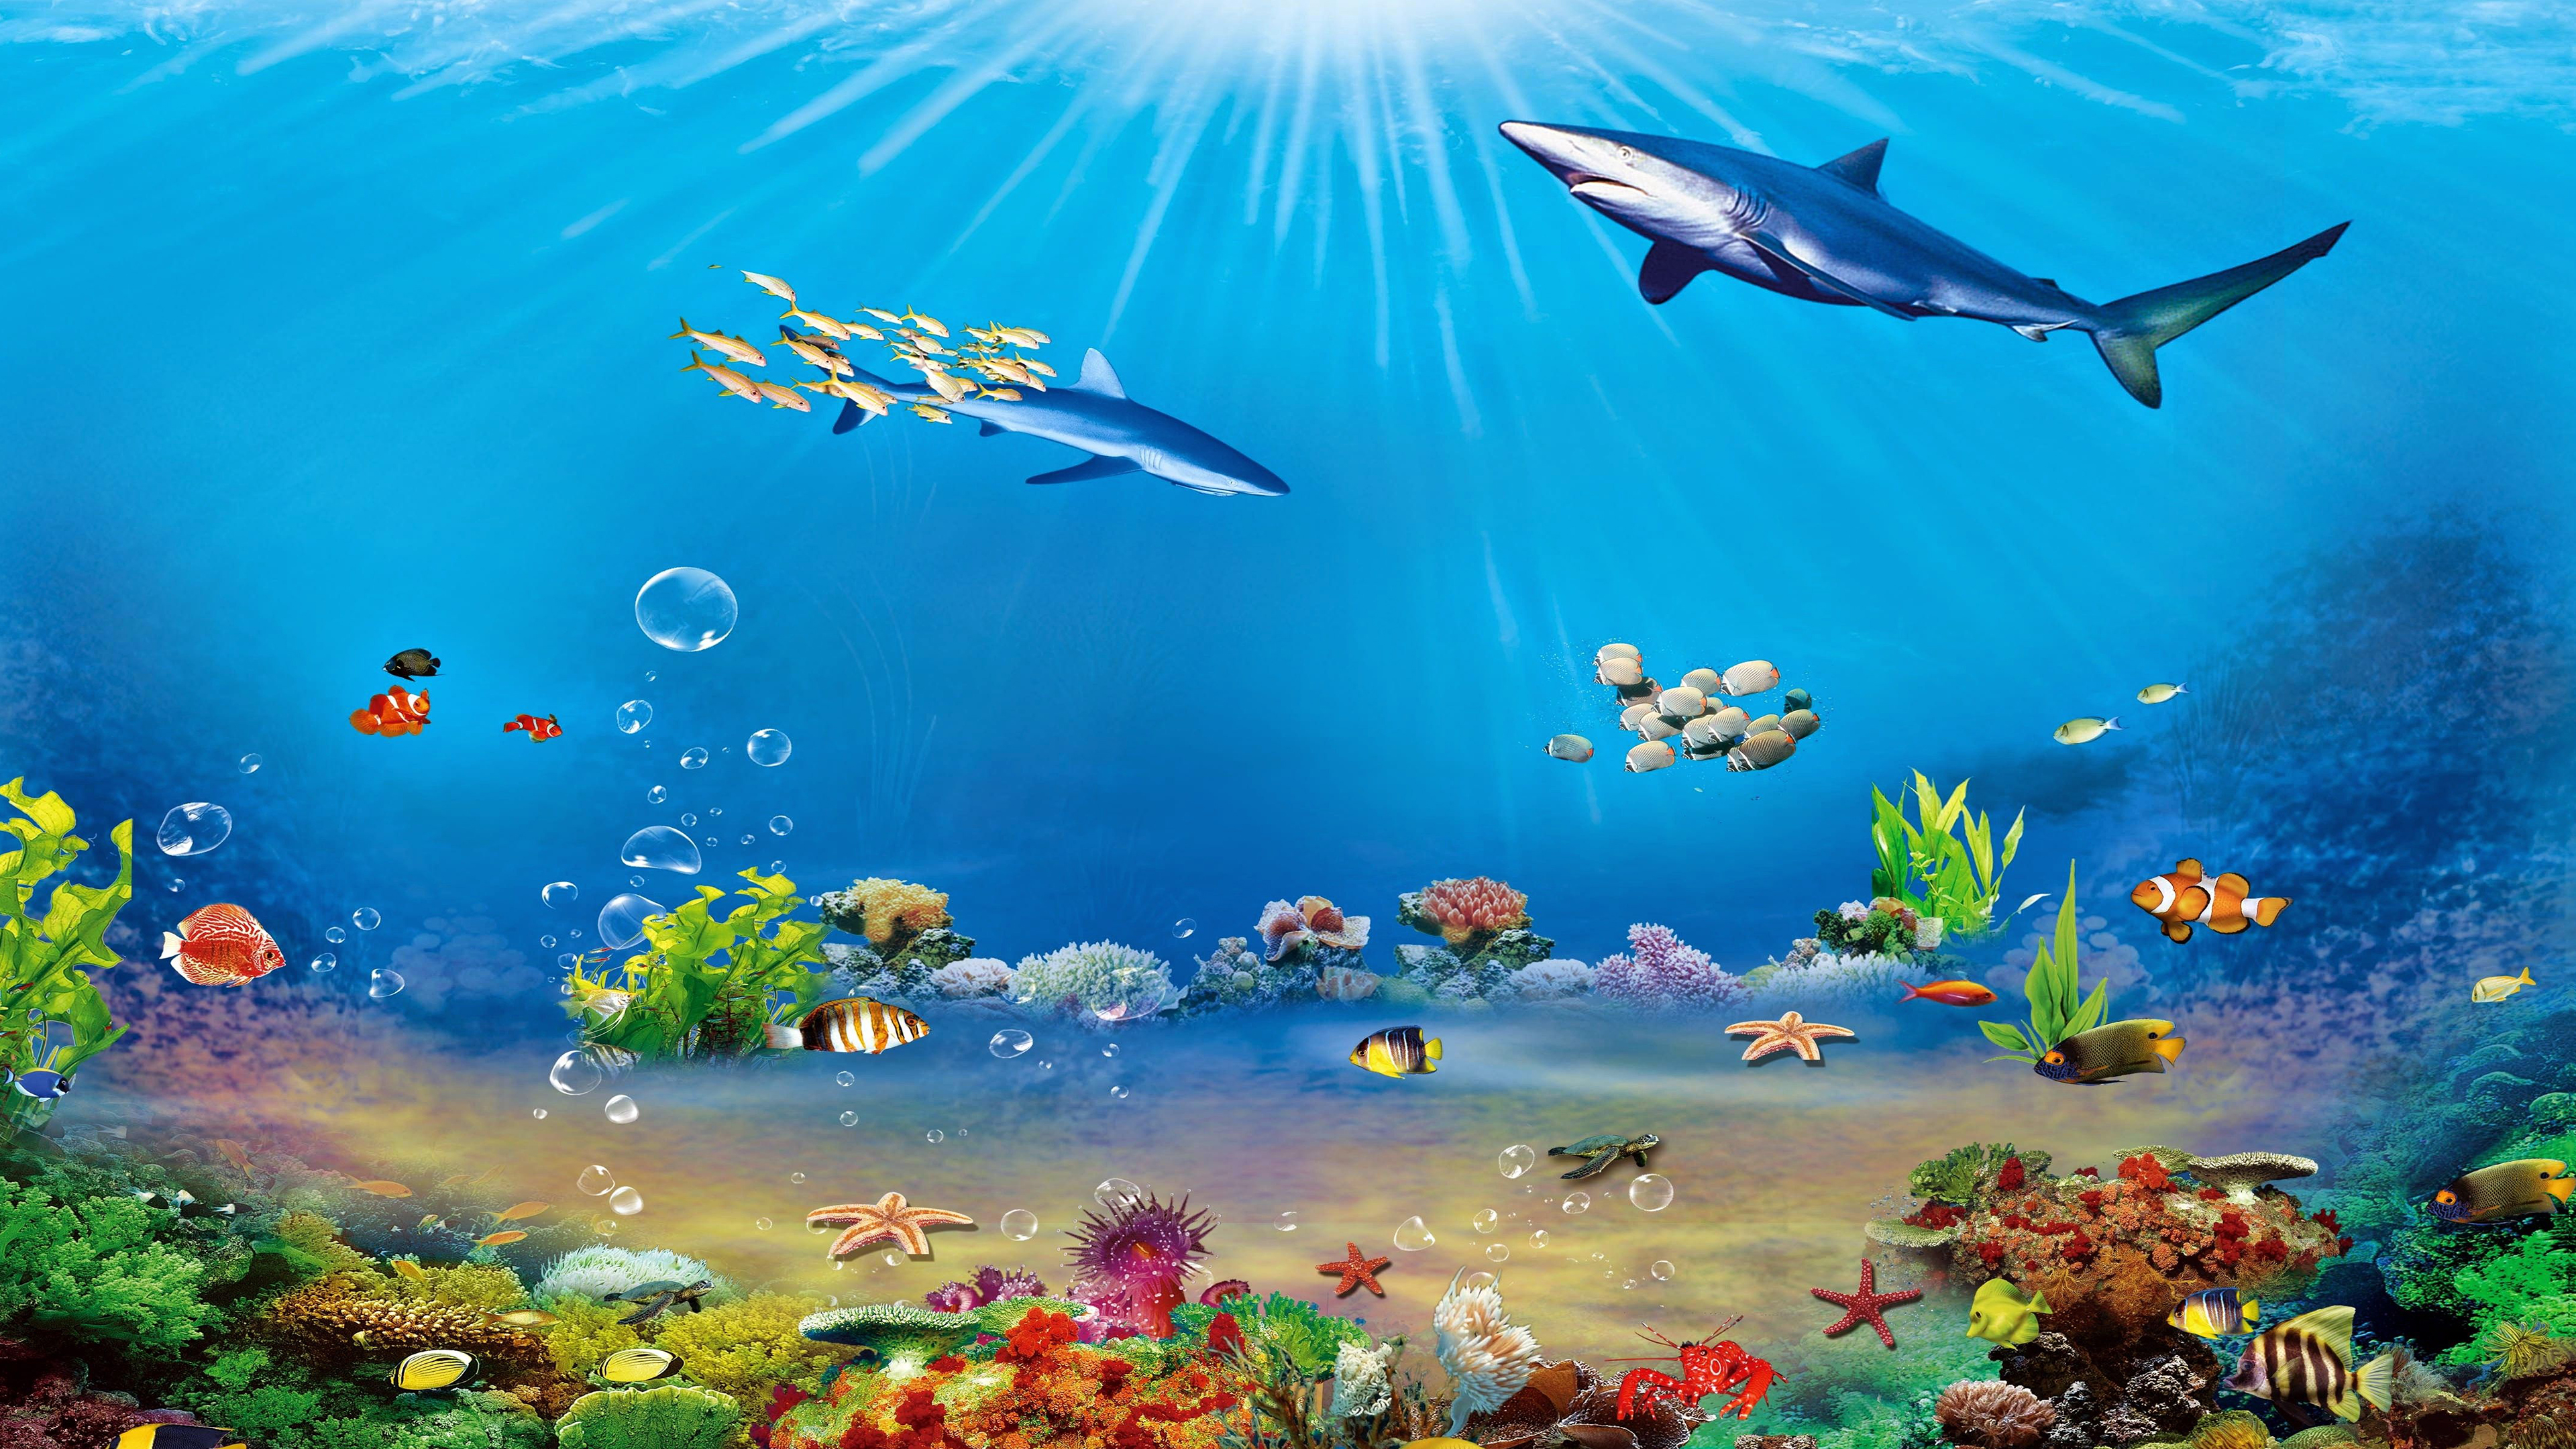 tranh tường 3D đại dương M01  Chia sẻ  cung cấp file thiết kế quảng cáo  đồ họa vector file in ấn chất lượng Download file Corel AI PSD vector  miễn